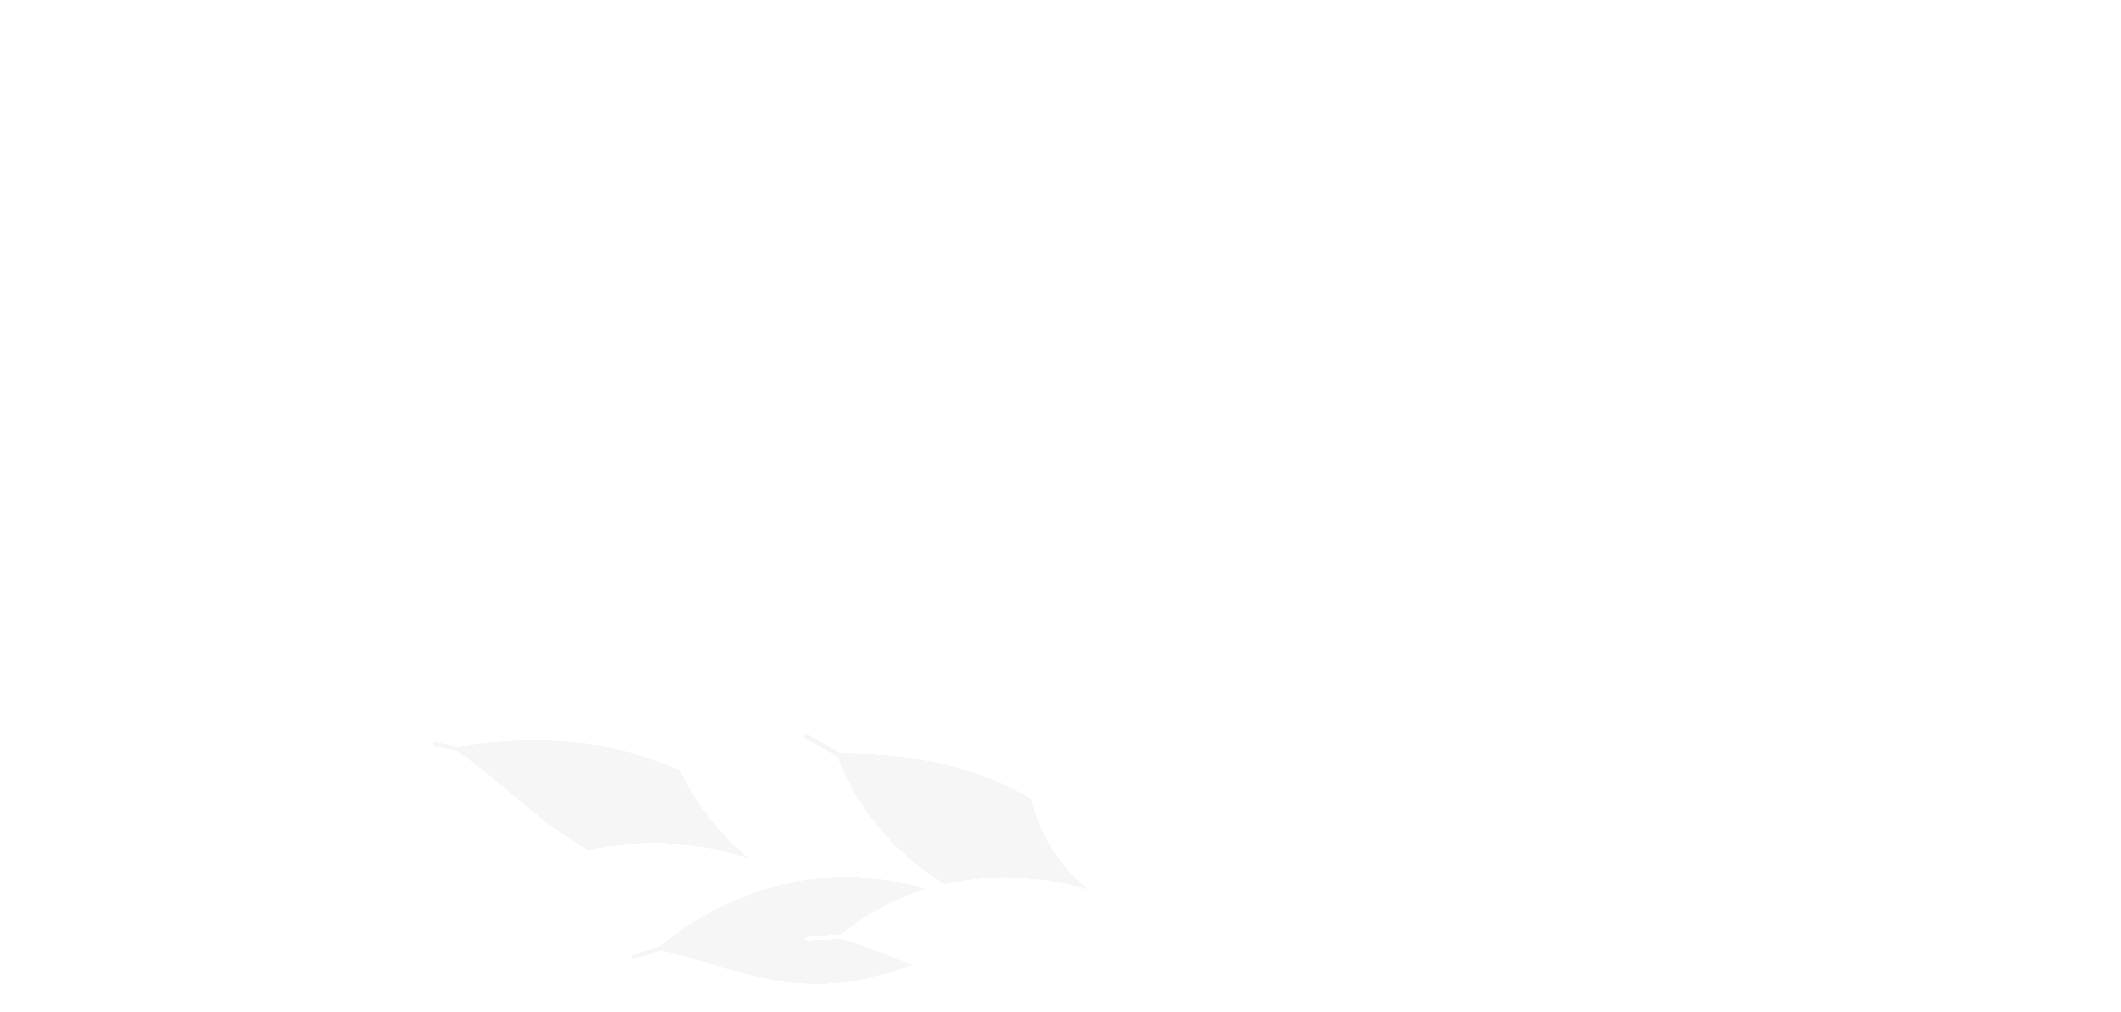 Logotyp Agronomerna med veteax under texten